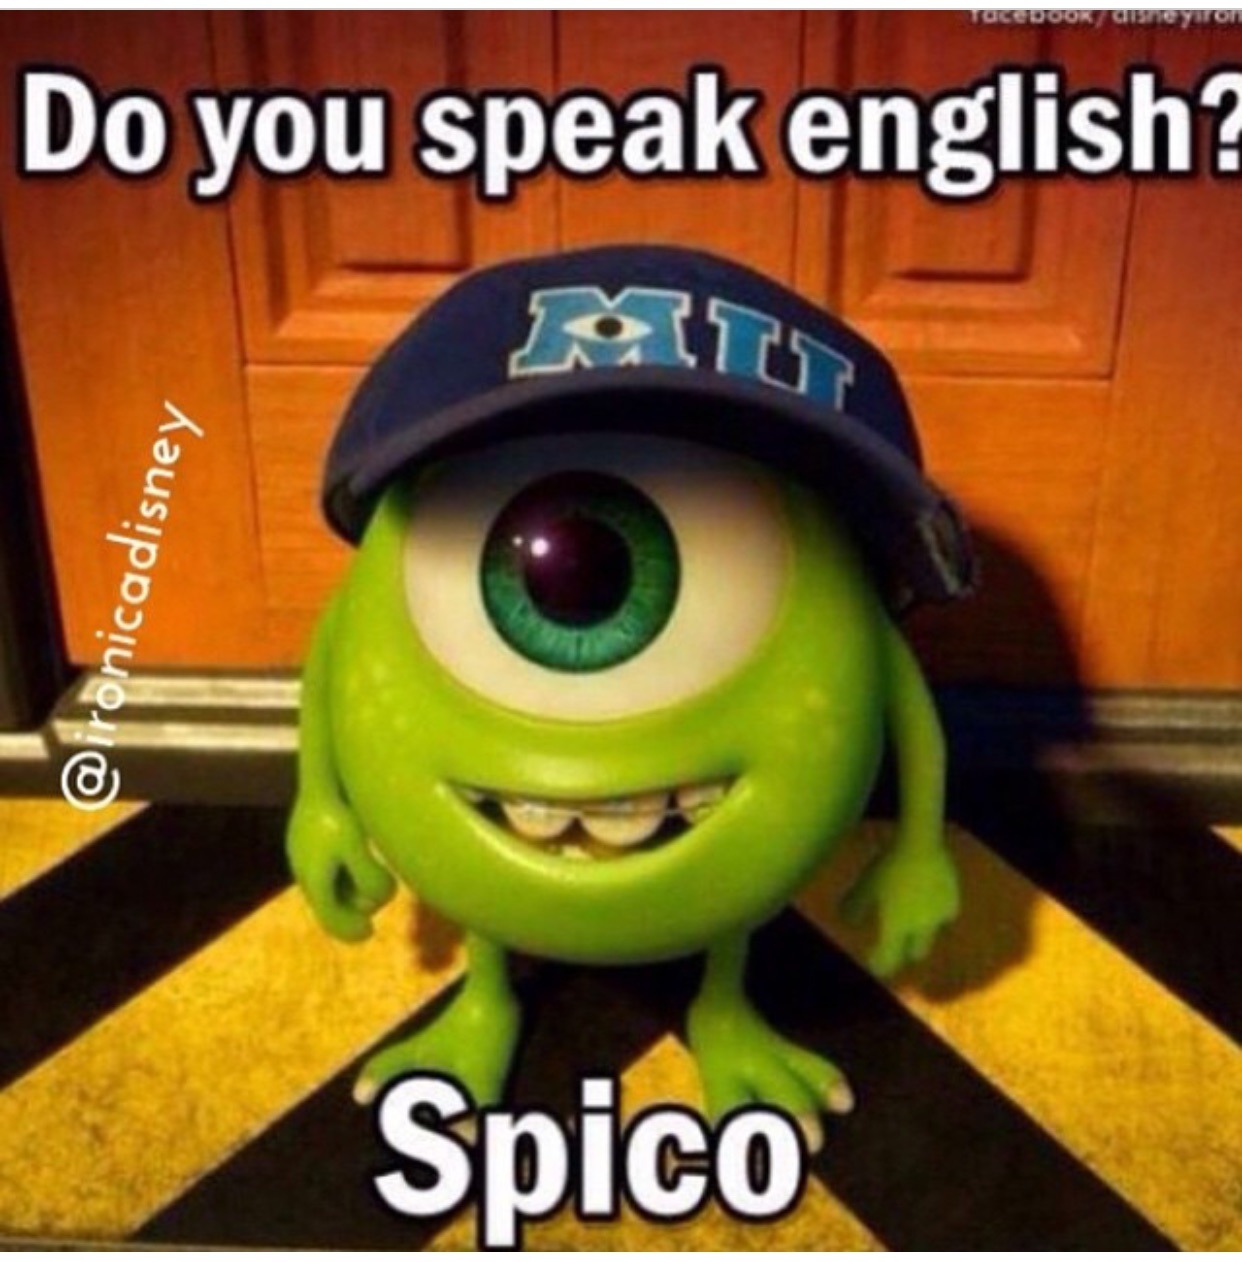 Yes, I speak english - meme